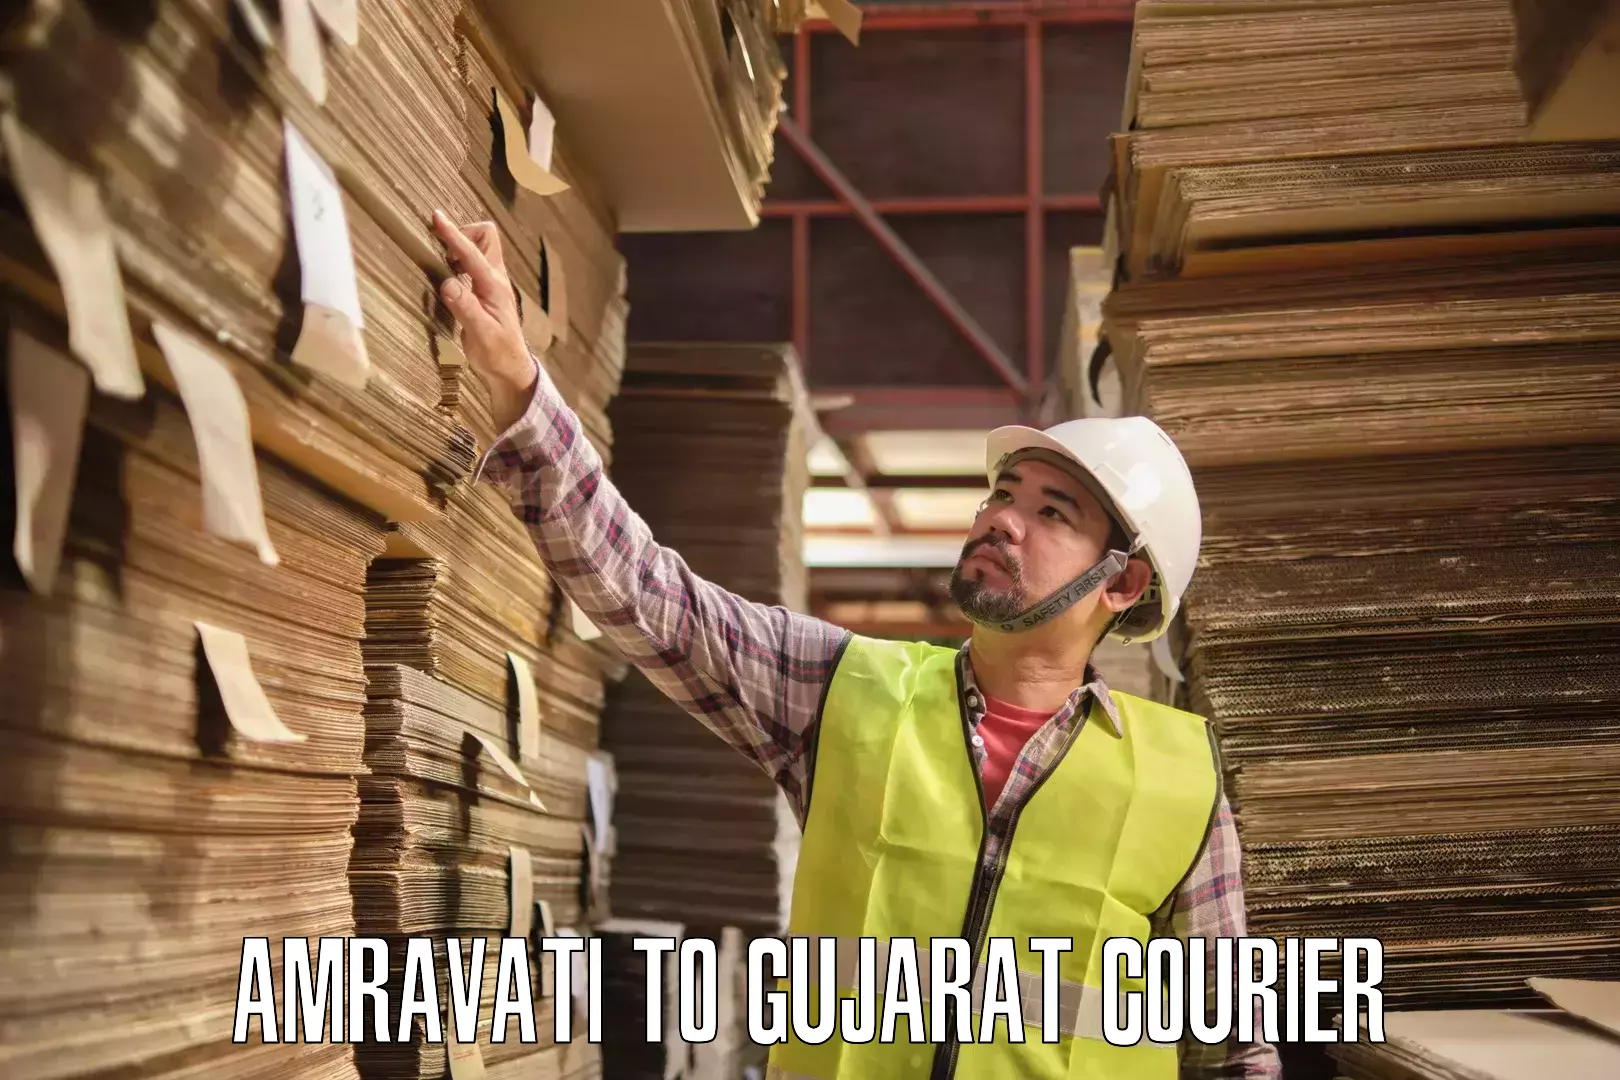 Fast-track shipping solutions Amravati to Gandhinagar